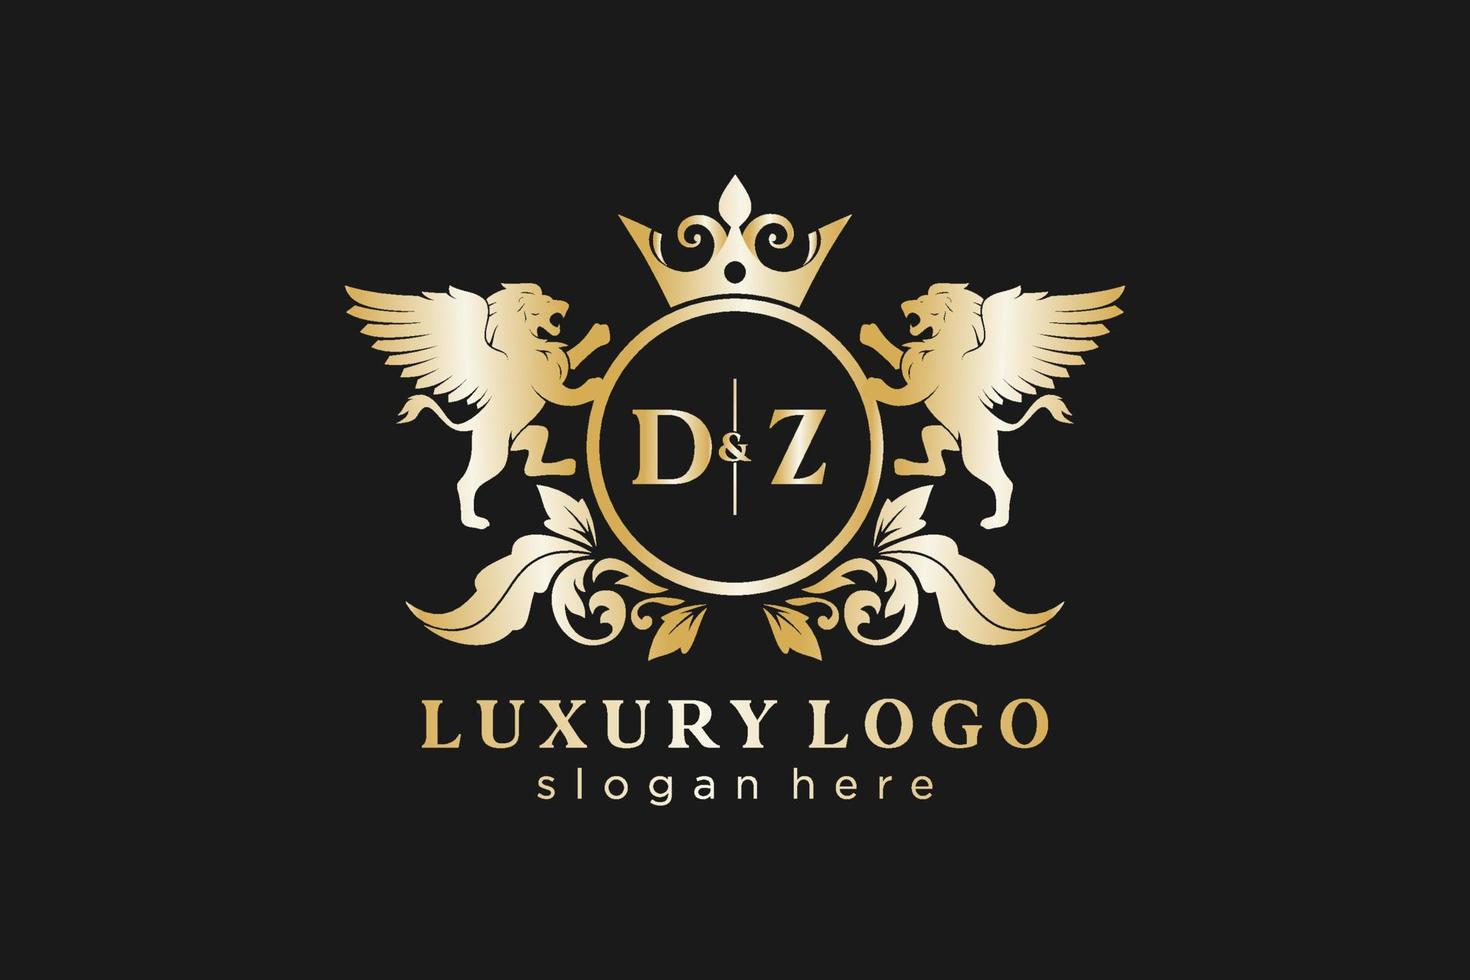 Initial dz Letter Lion Royal Luxury Logo Vorlage in Vektorgrafiken für Restaurant, Lizenzgebühren, Boutique, Café, Hotel, Heraldik, Schmuck, Mode und andere Vektorillustrationen. vektor